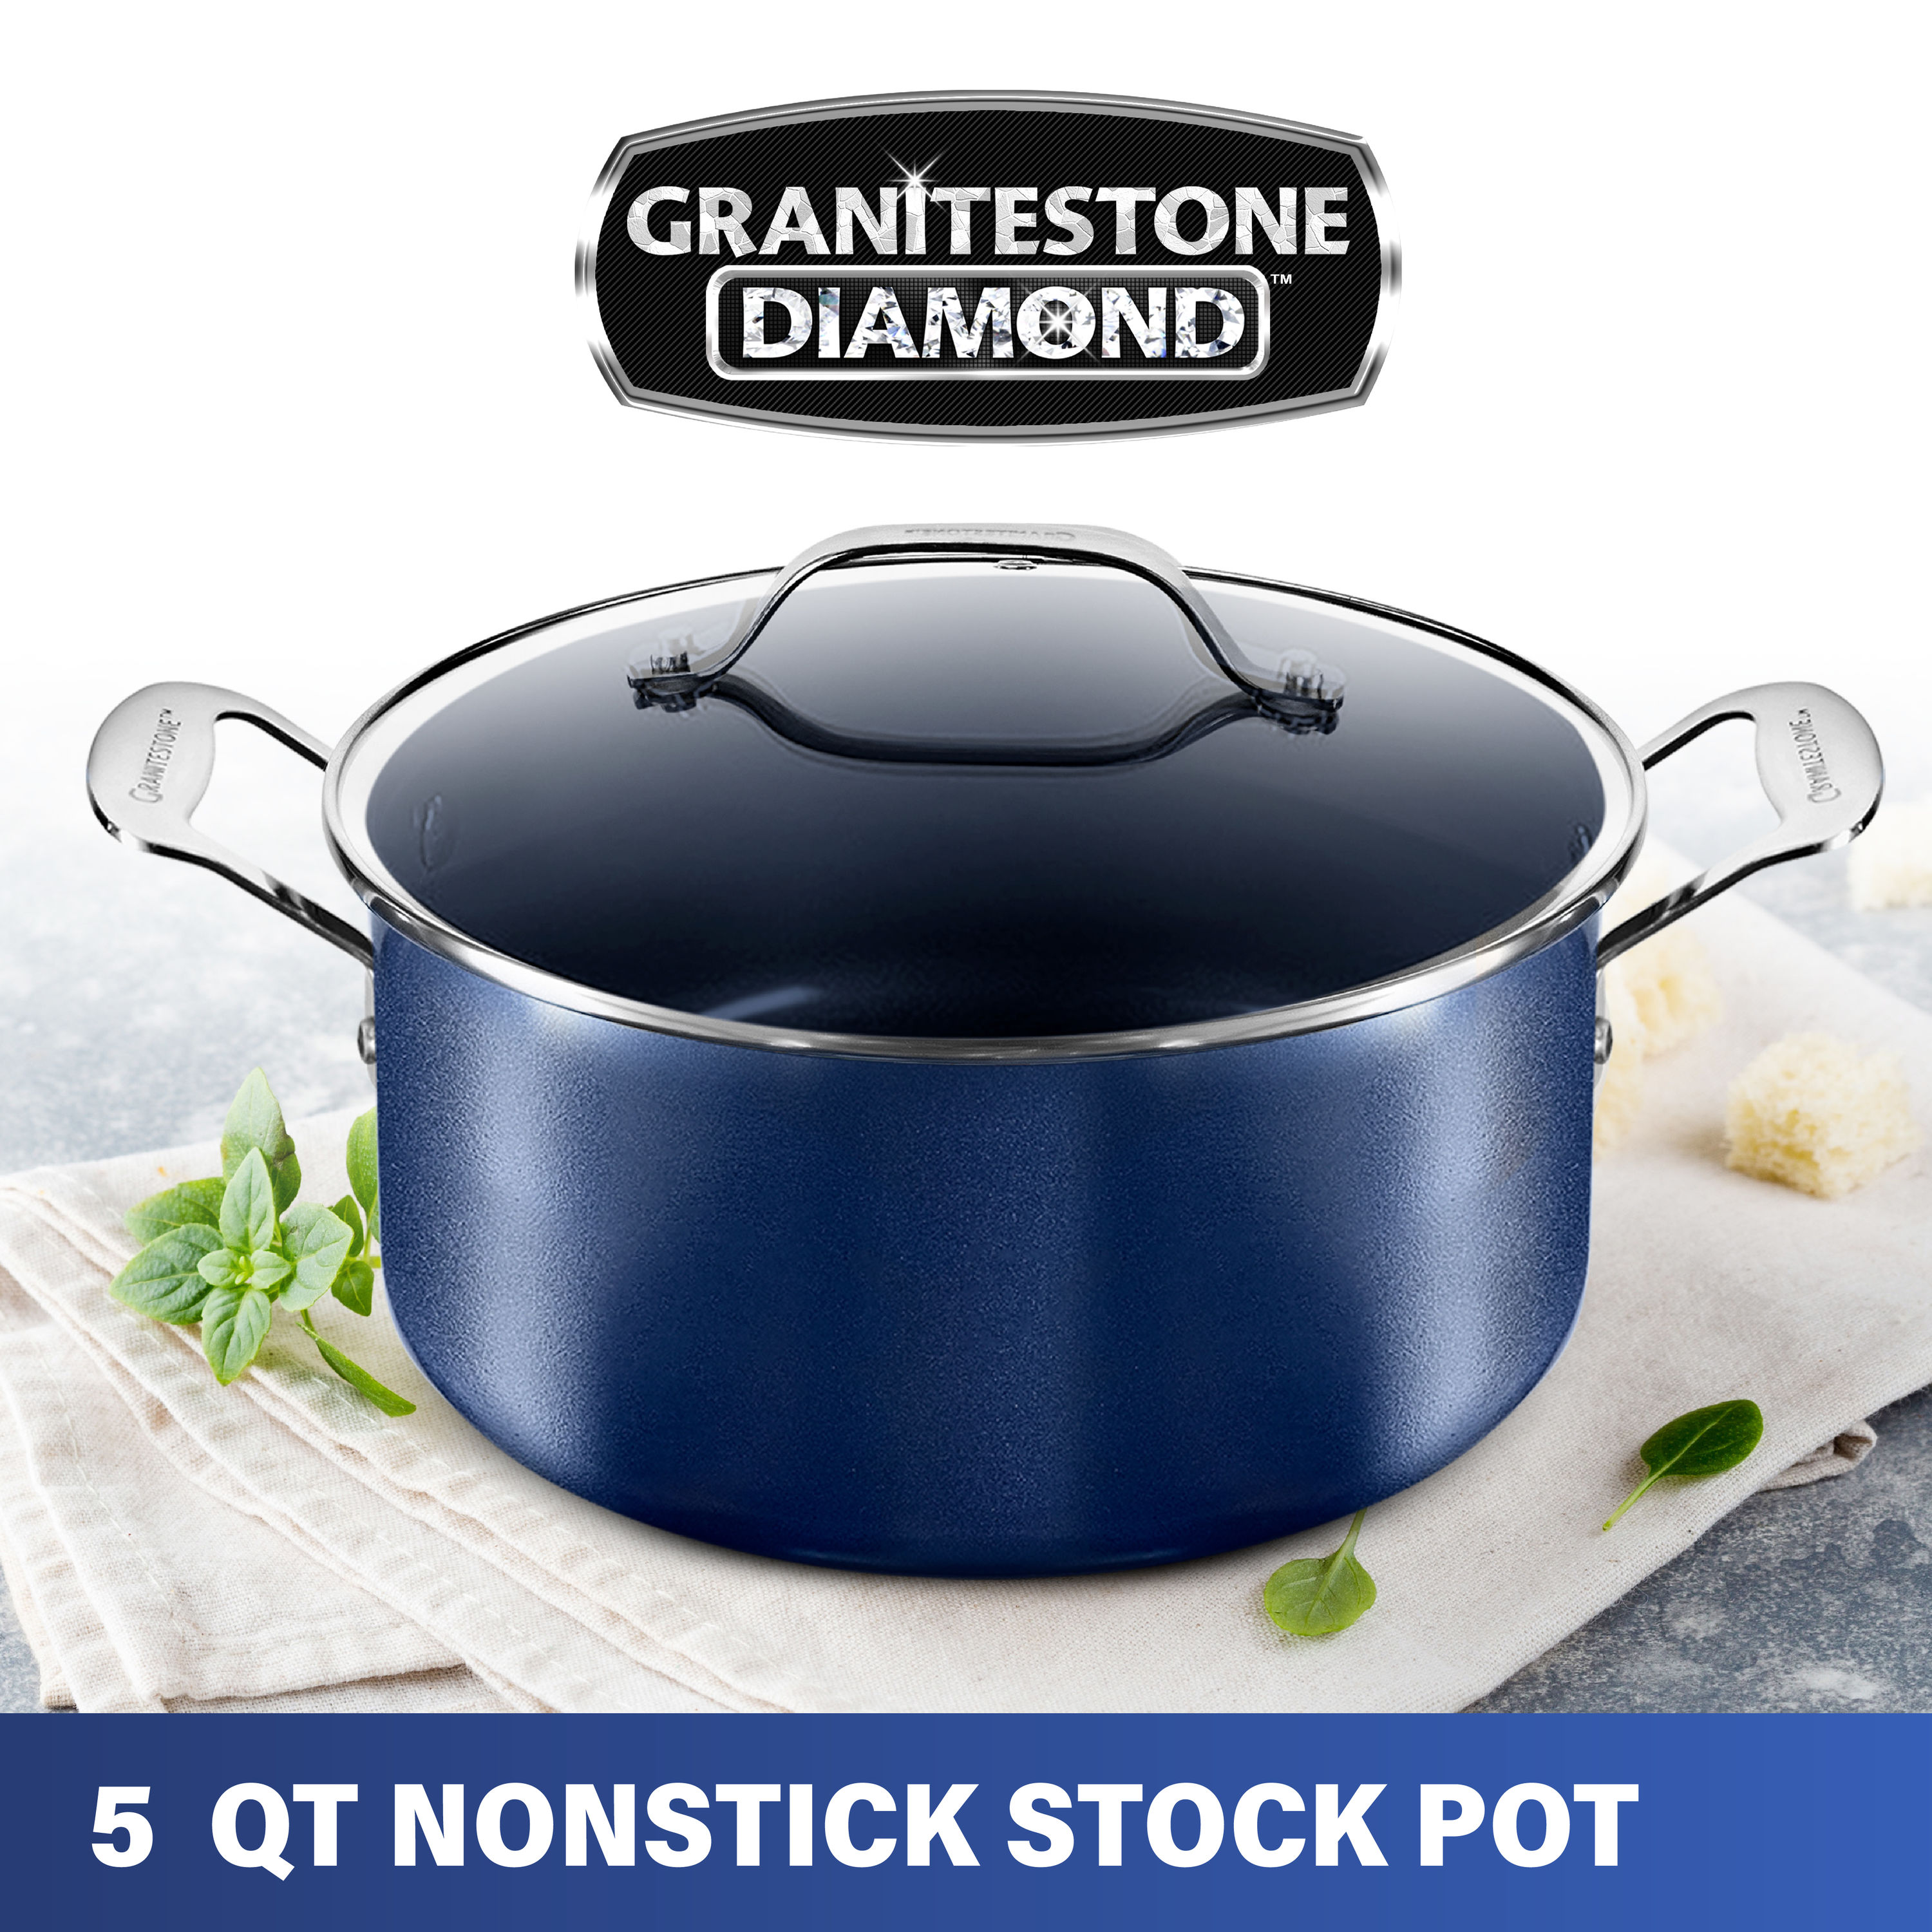 Granitestone Diamond 5-Qt. Nonstick Dutch Oven Black